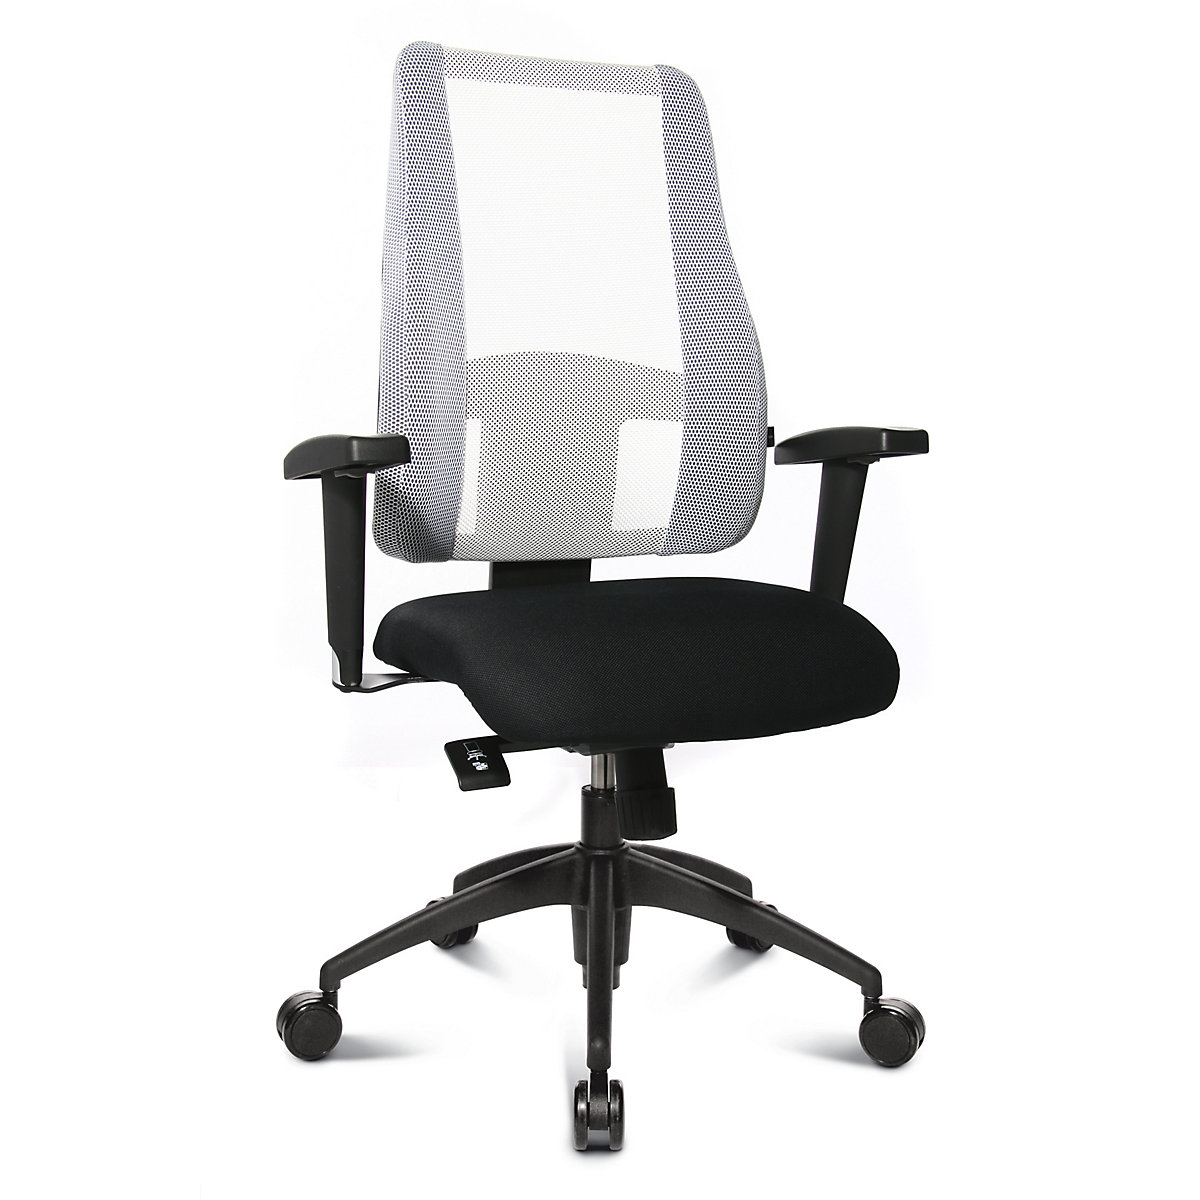 Cadeira giratória de escritório LADY SITNESS DELUXE – Topstar, móvel com 7 zonas, preto/branco-1